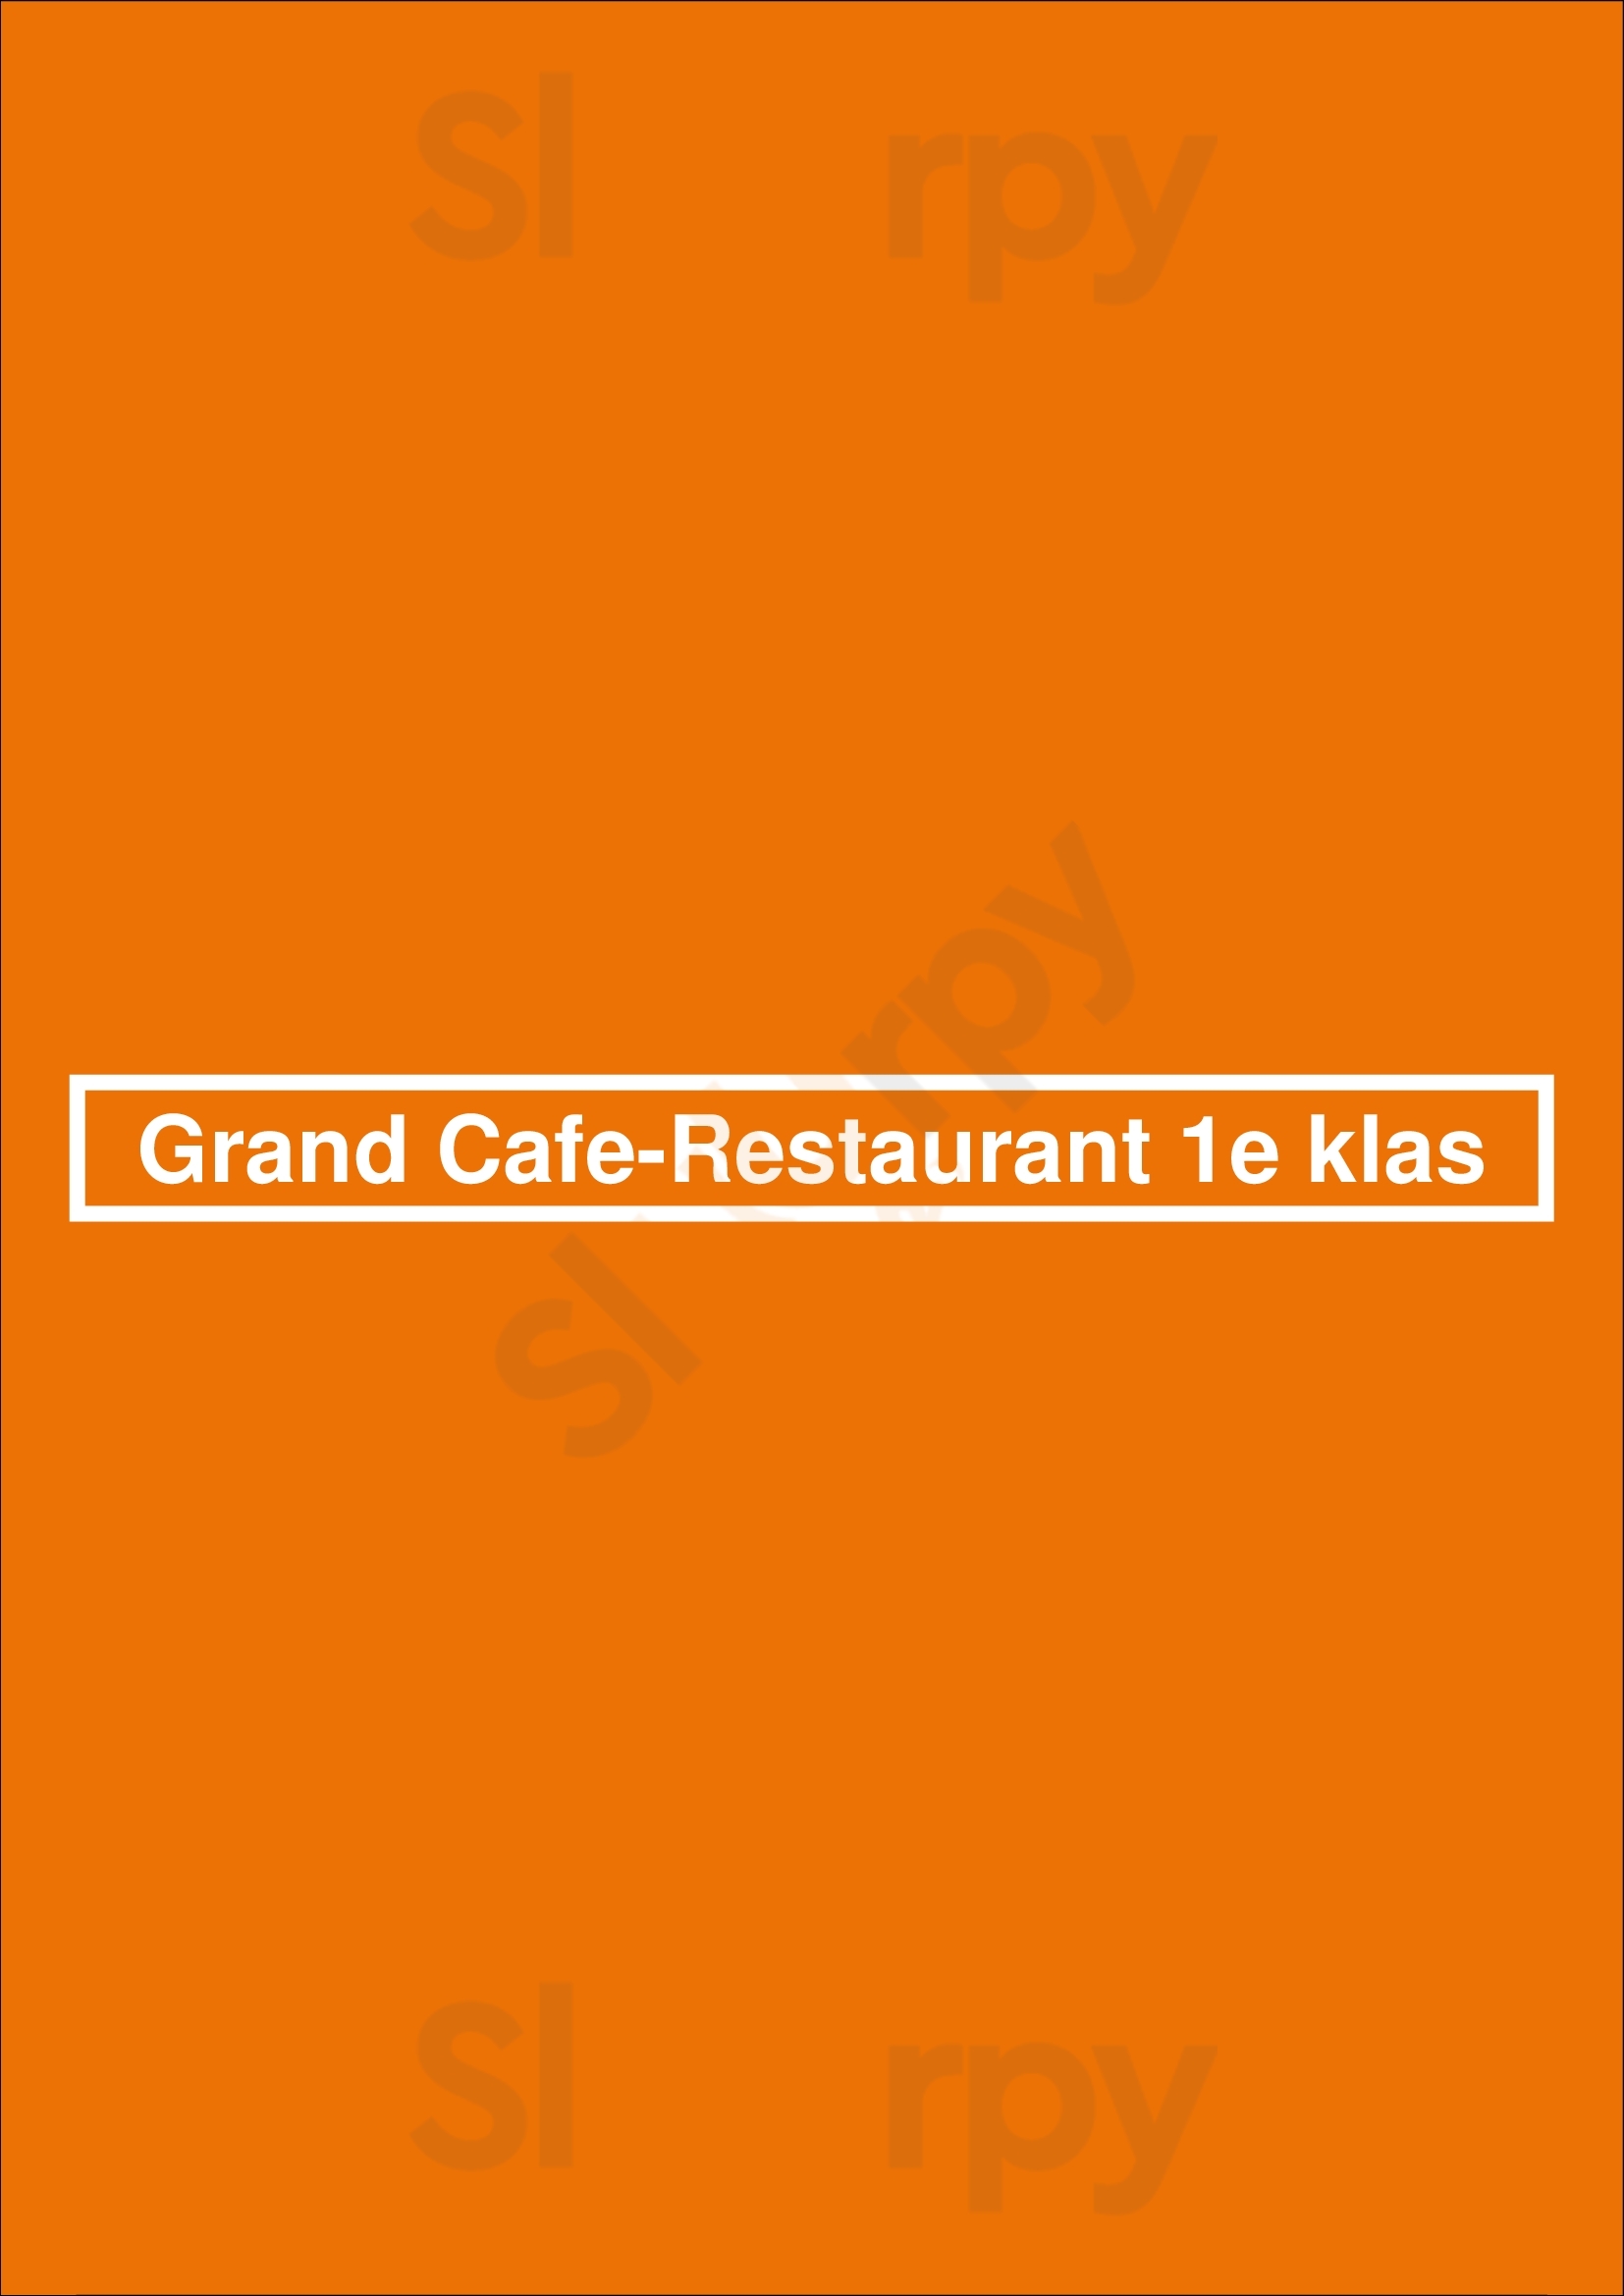 Grand Cafe-restaurant 1e Klas Amsterdam Menu - 1